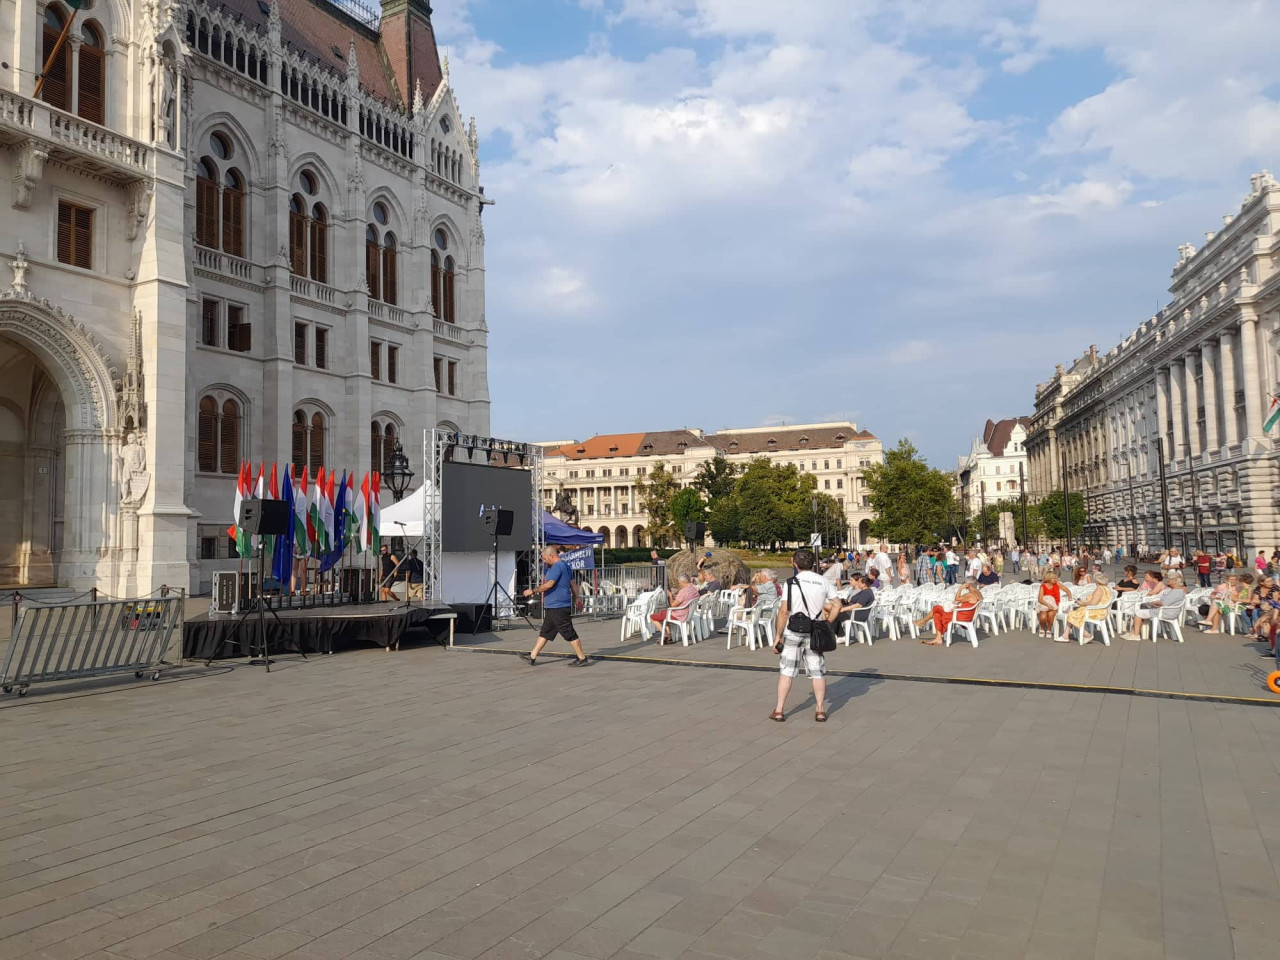 Gyülekeznek a tüntetők a Kossuth térre este hatra meghirdetett demonstrációra, 2022. augusztus 6-án. (Fotó: Ficsor Benedek/Magyar Hang)